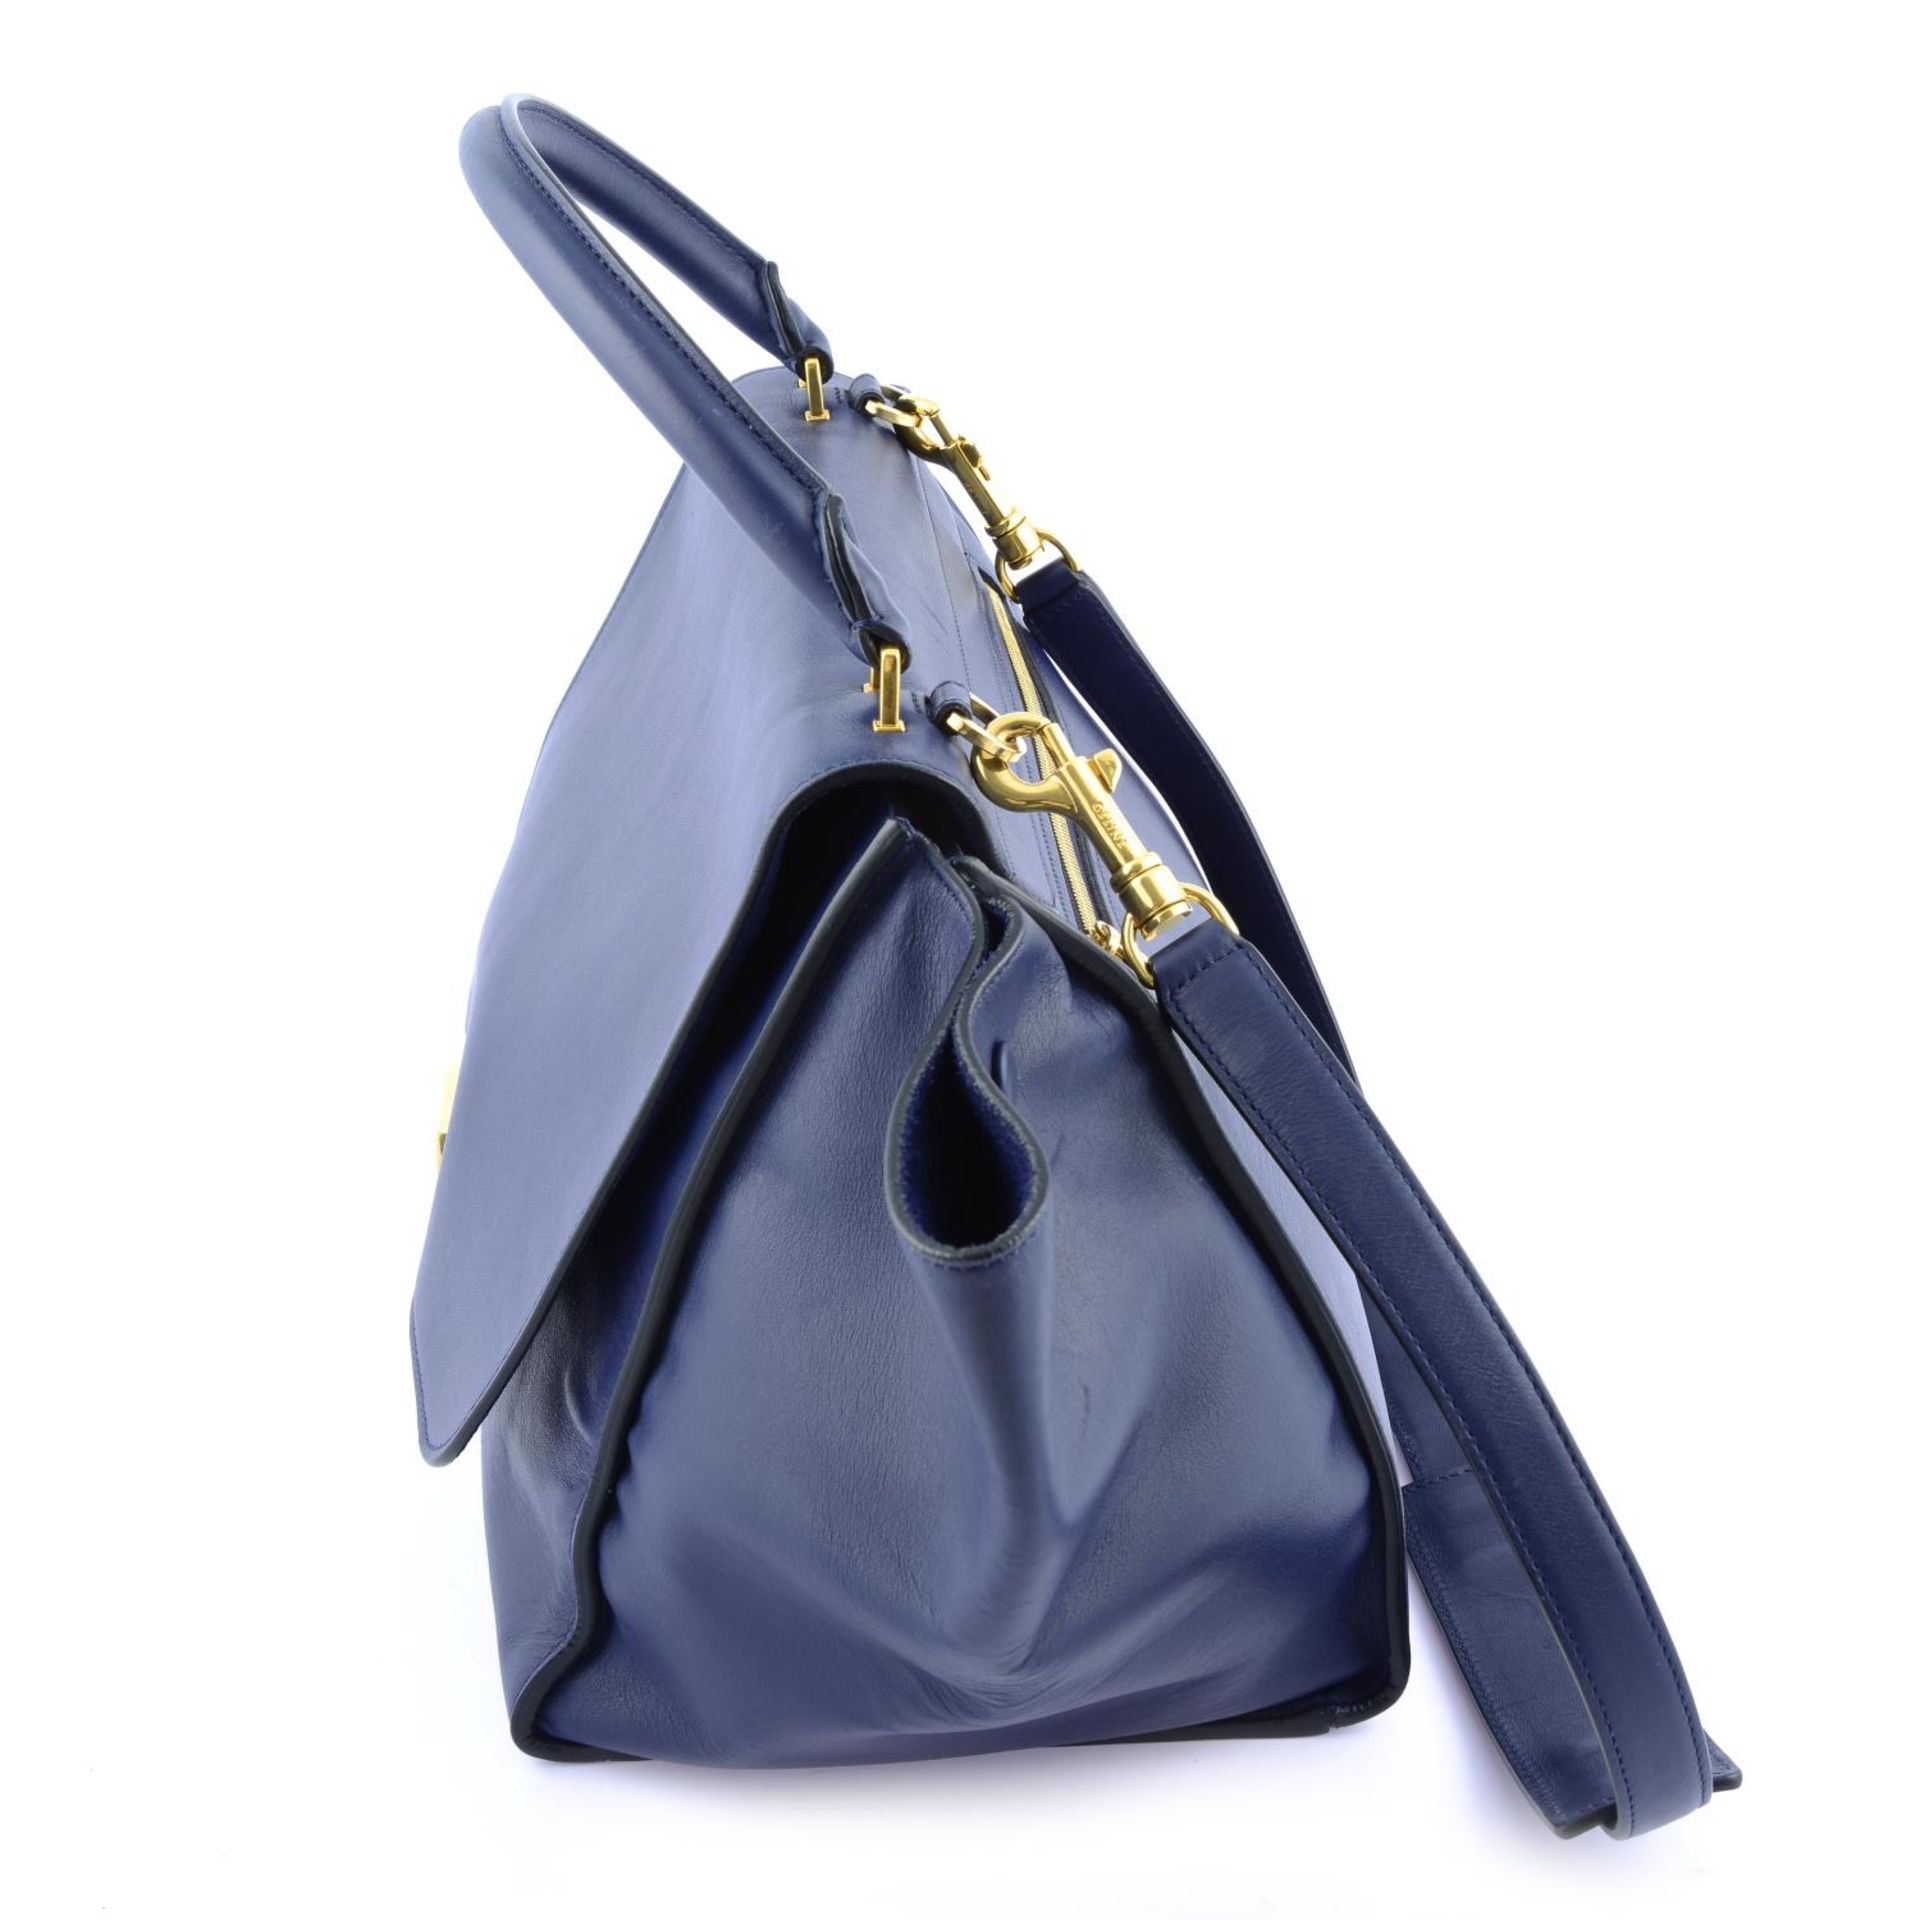 CÉLINE - a blue leather Trapeze handbag. - Image 3 of 4